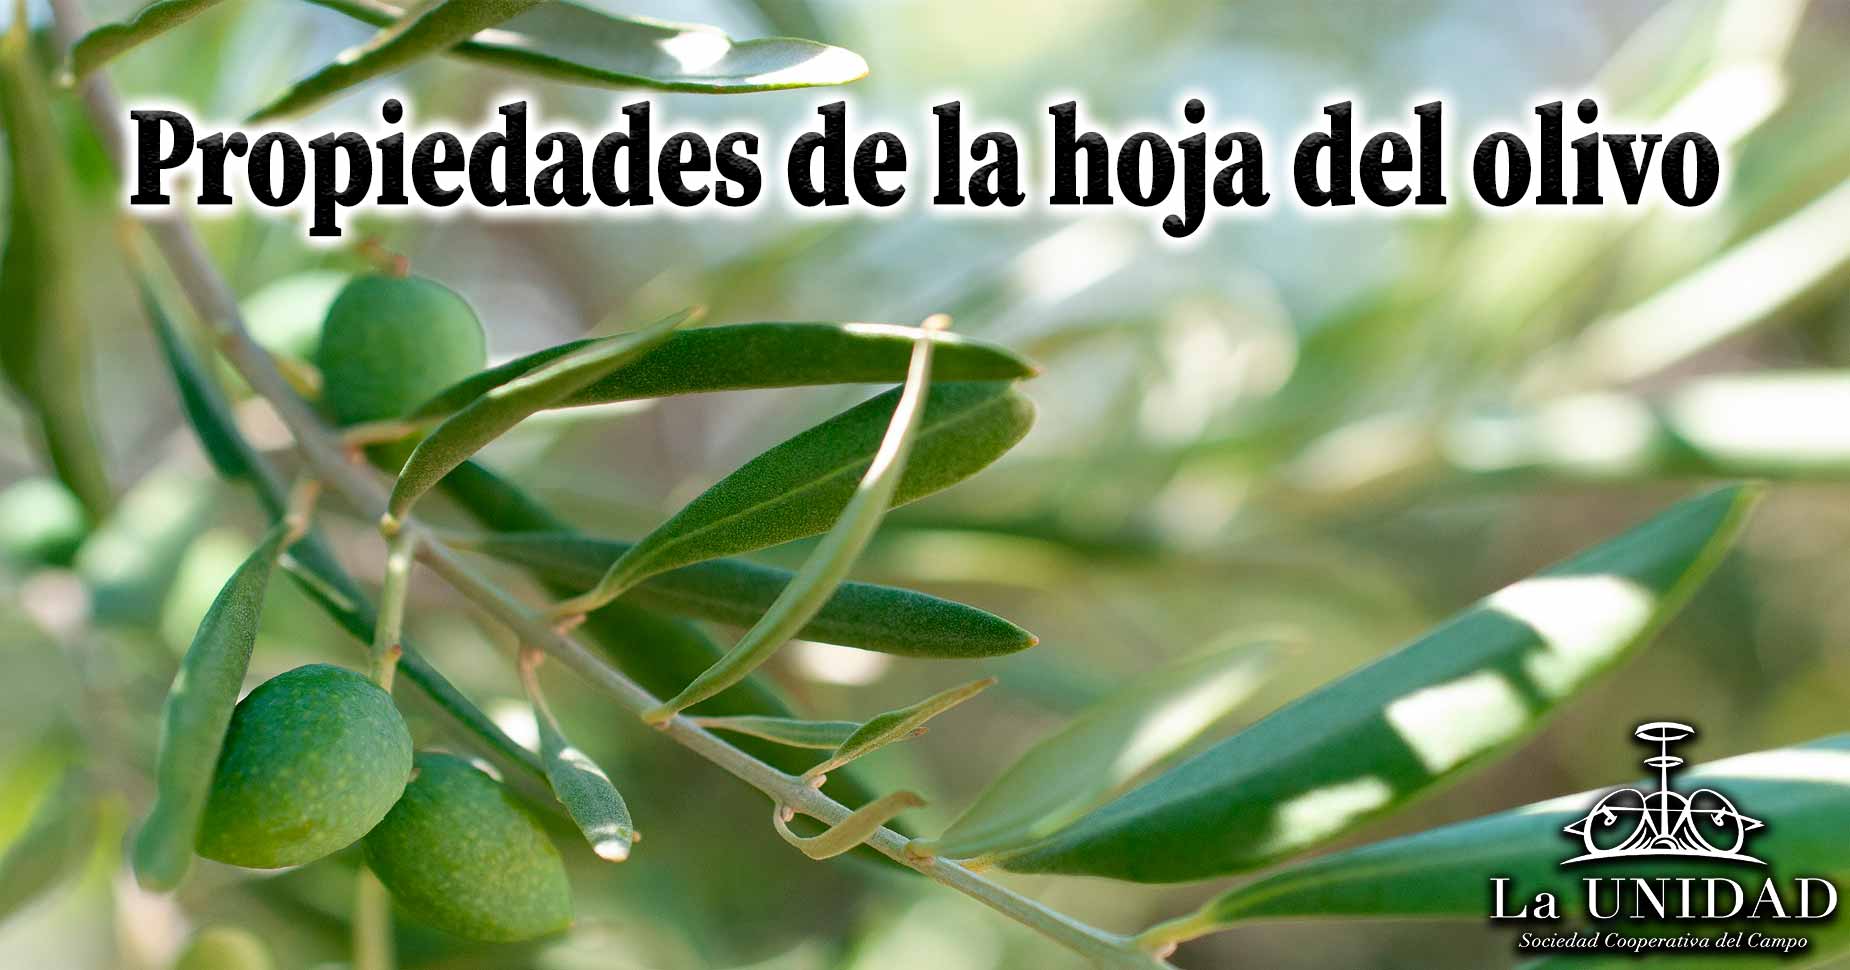 Propiedades de la hoja del olivo, descubre sus beneficios saludables.